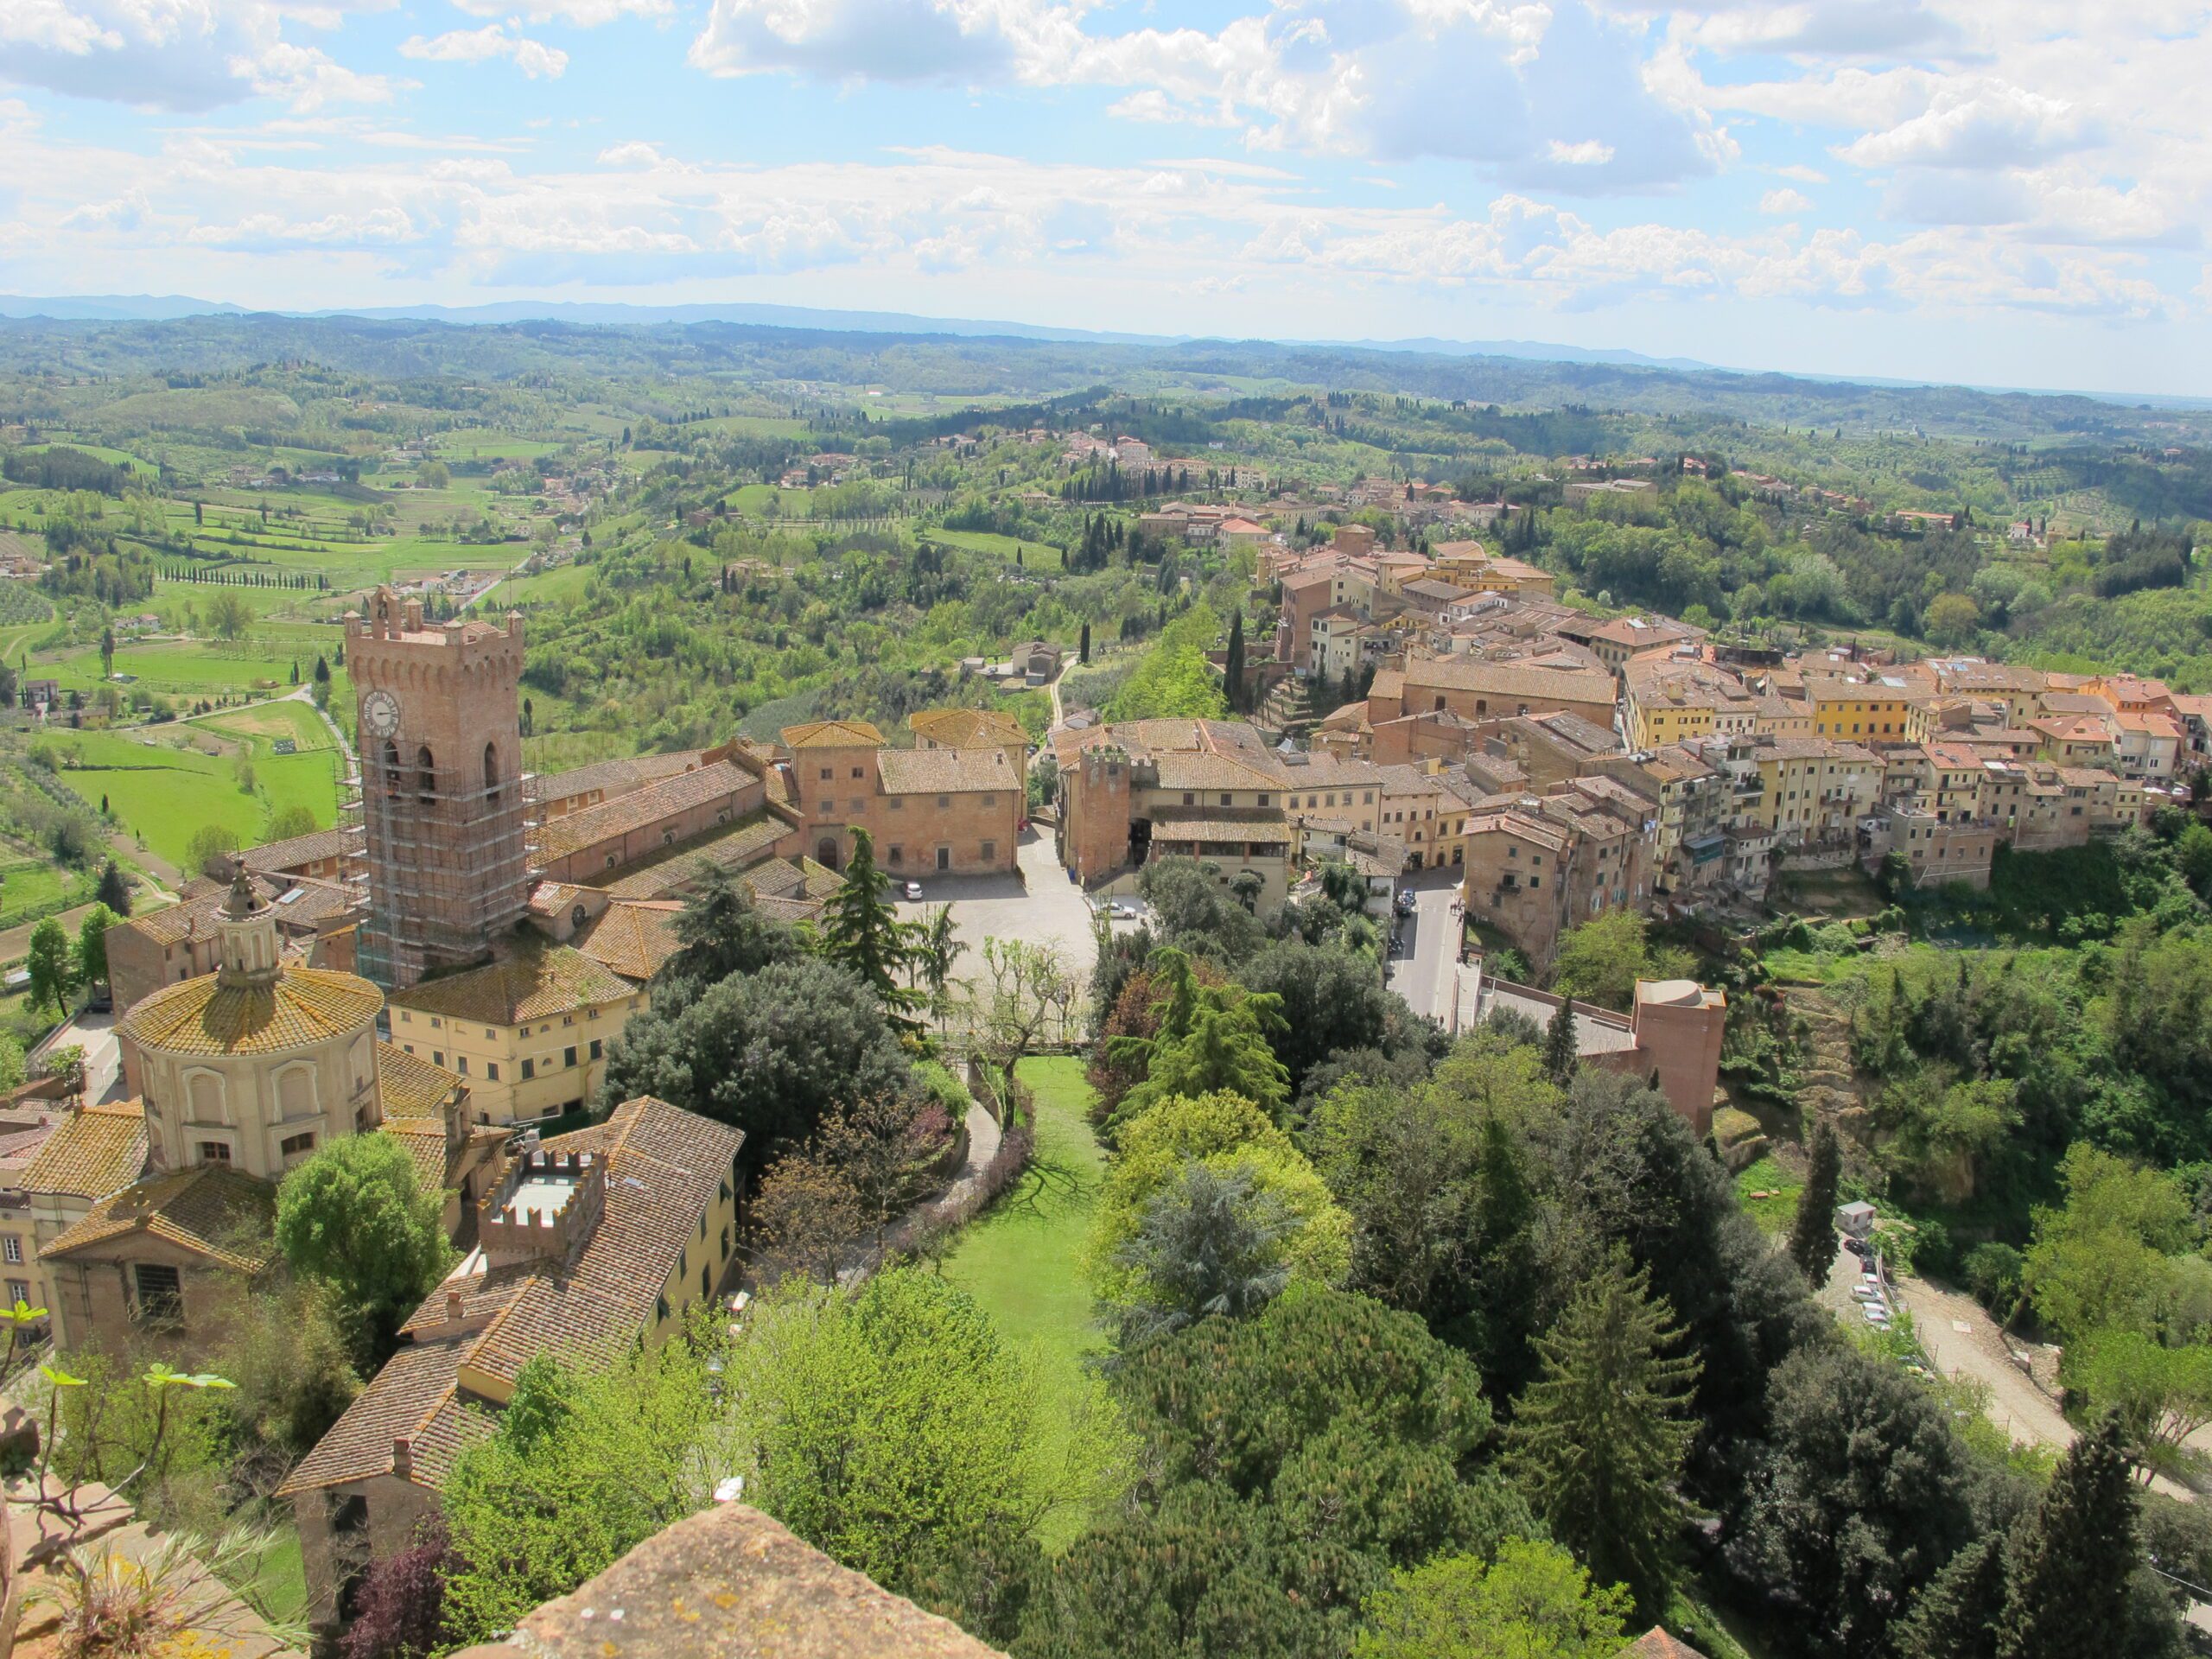 San Miniato ed il suo Tartufo - 1 - Turismo del Vino in Toscana